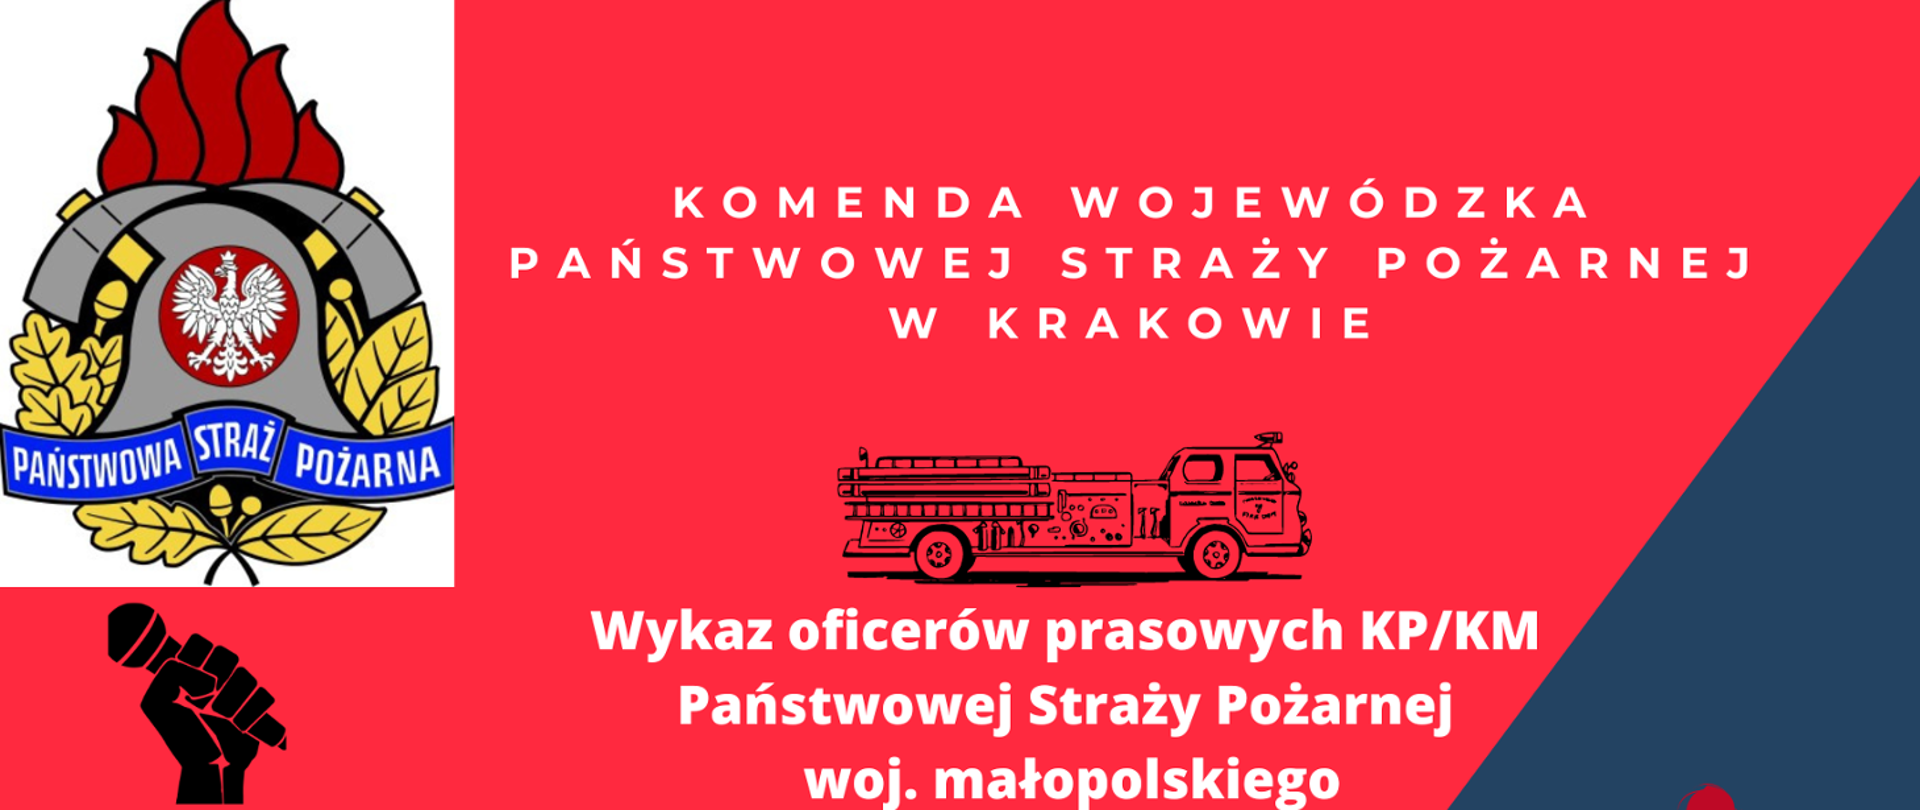 Wykaz oficerów prasowych KP/KM Państwowej Straży Pożarnej woj. małopolskiego